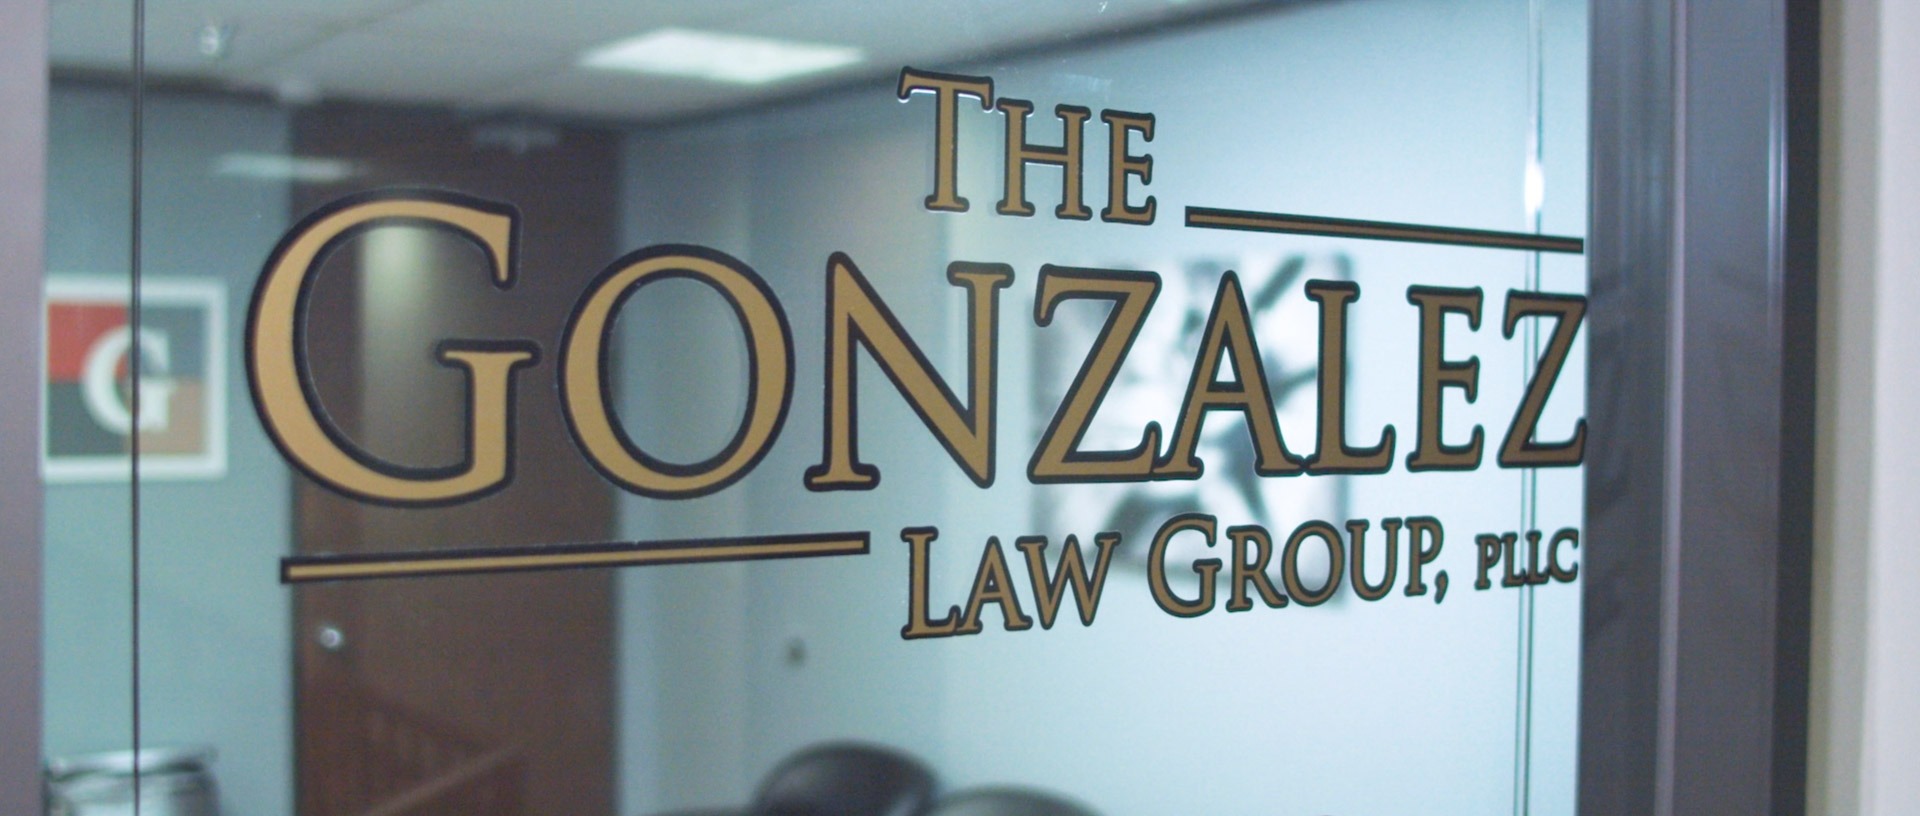 The Gonzalez Law Group, PLLC Photo